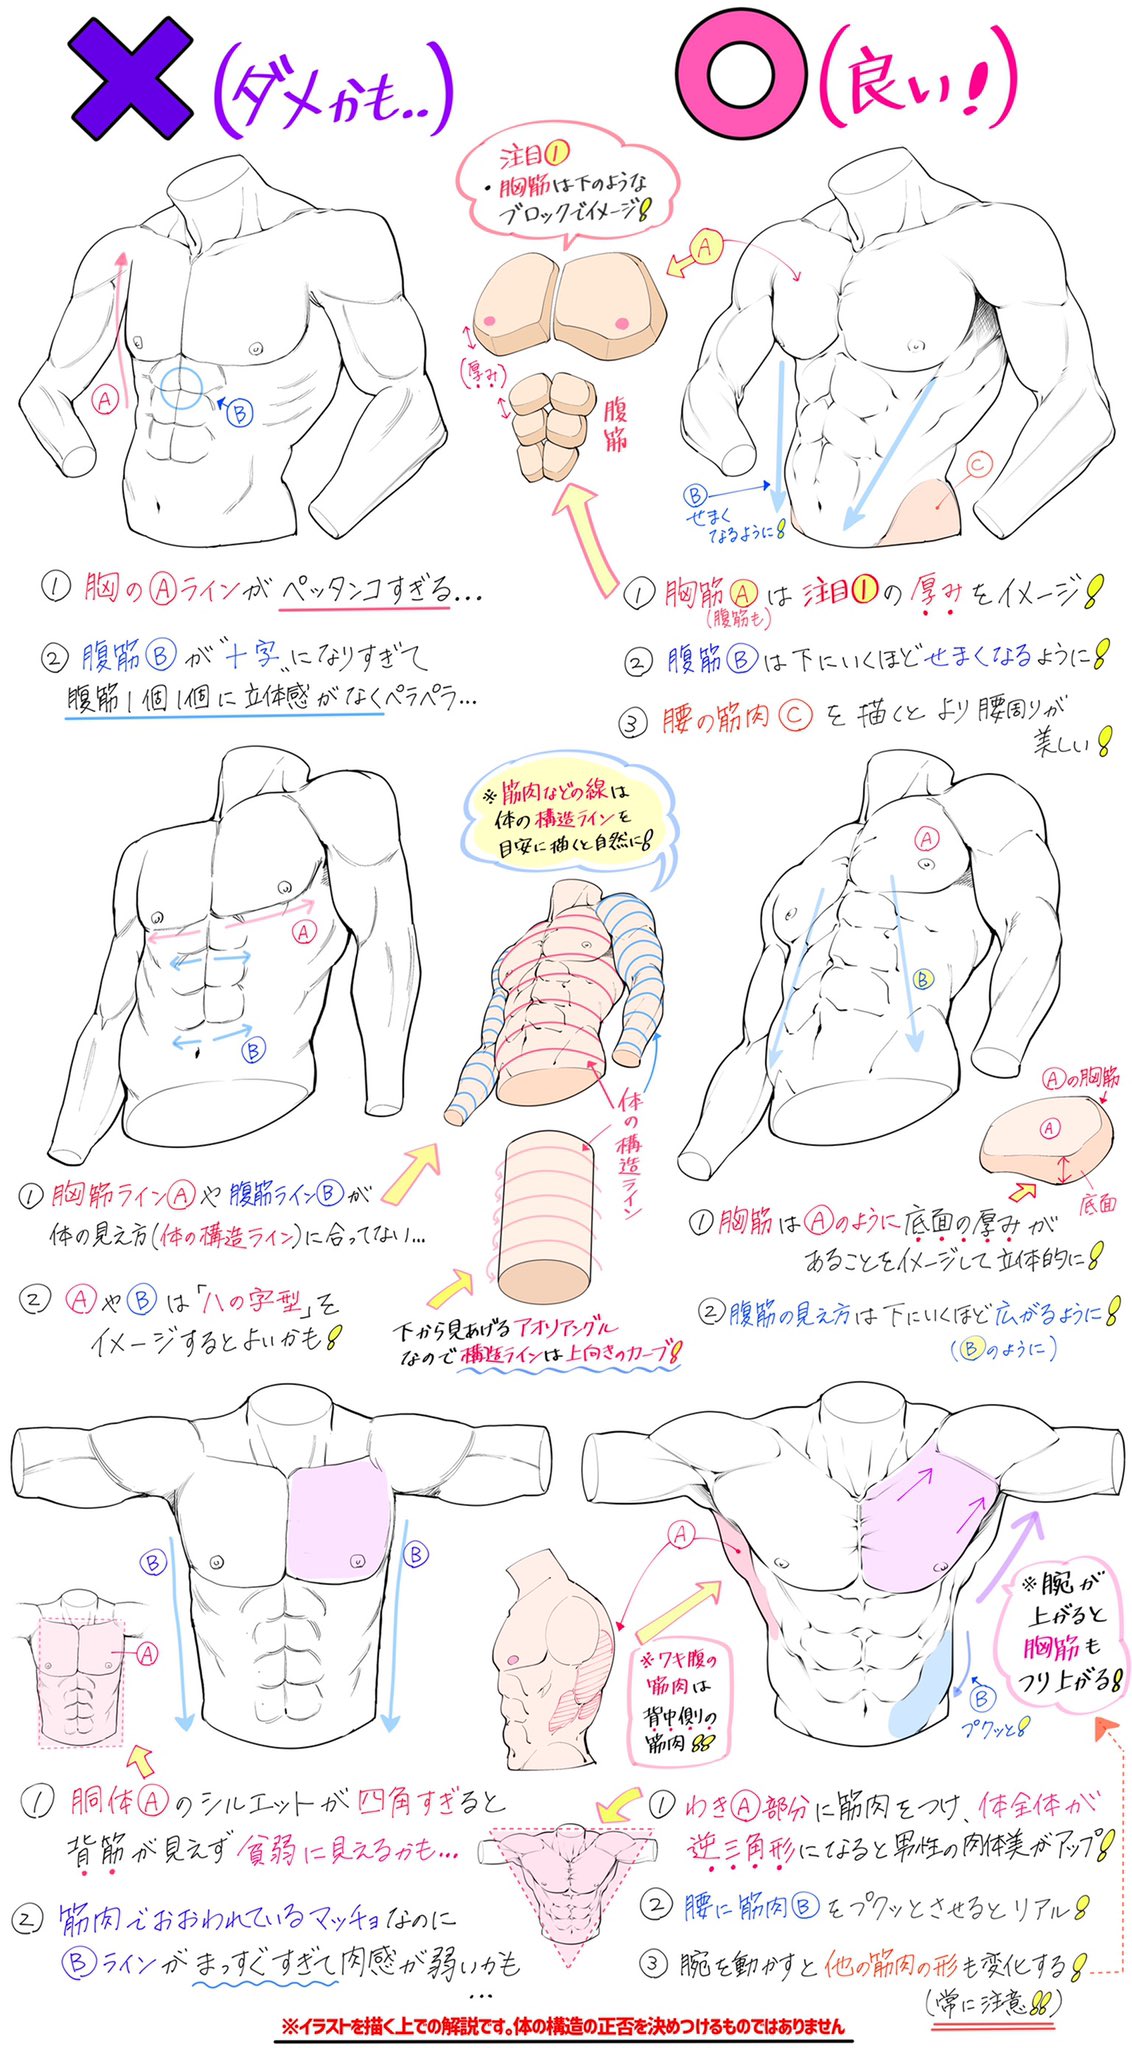 吉村拓也 イラスト講座 男性の筋肉パーツの描き方 パッと見てわかりやすい 筋肉の形 ダメかも と いいかも